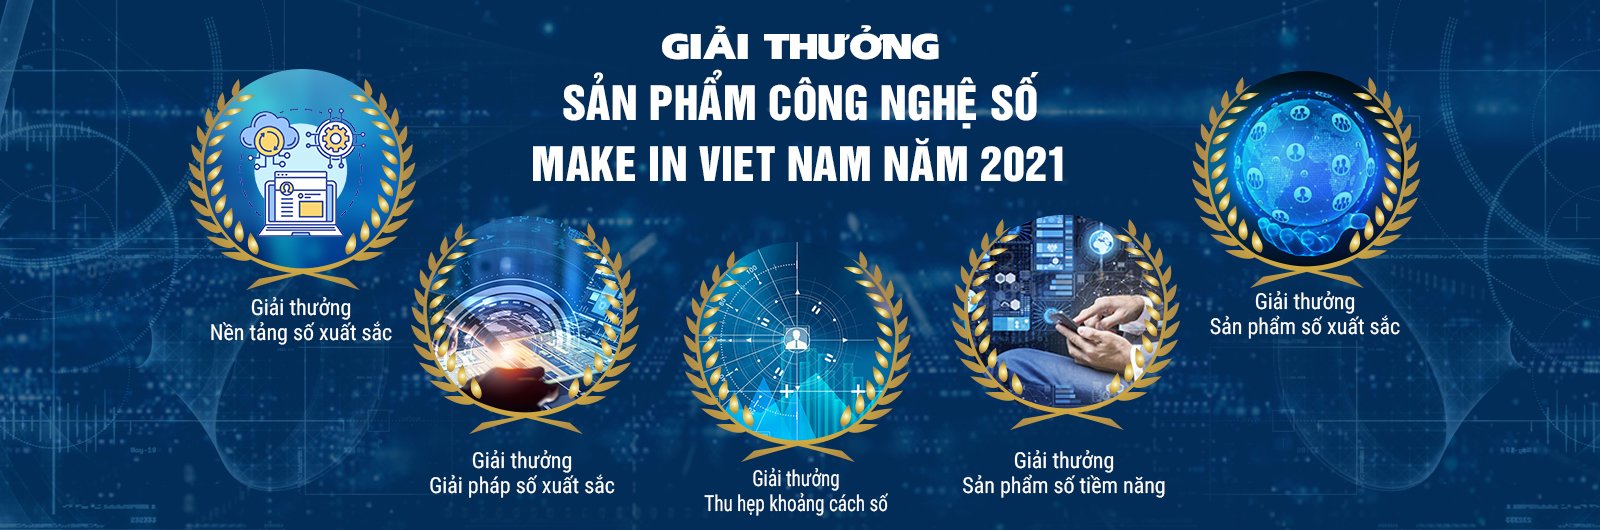 giai-thuong-make-in-vietnam.jpg